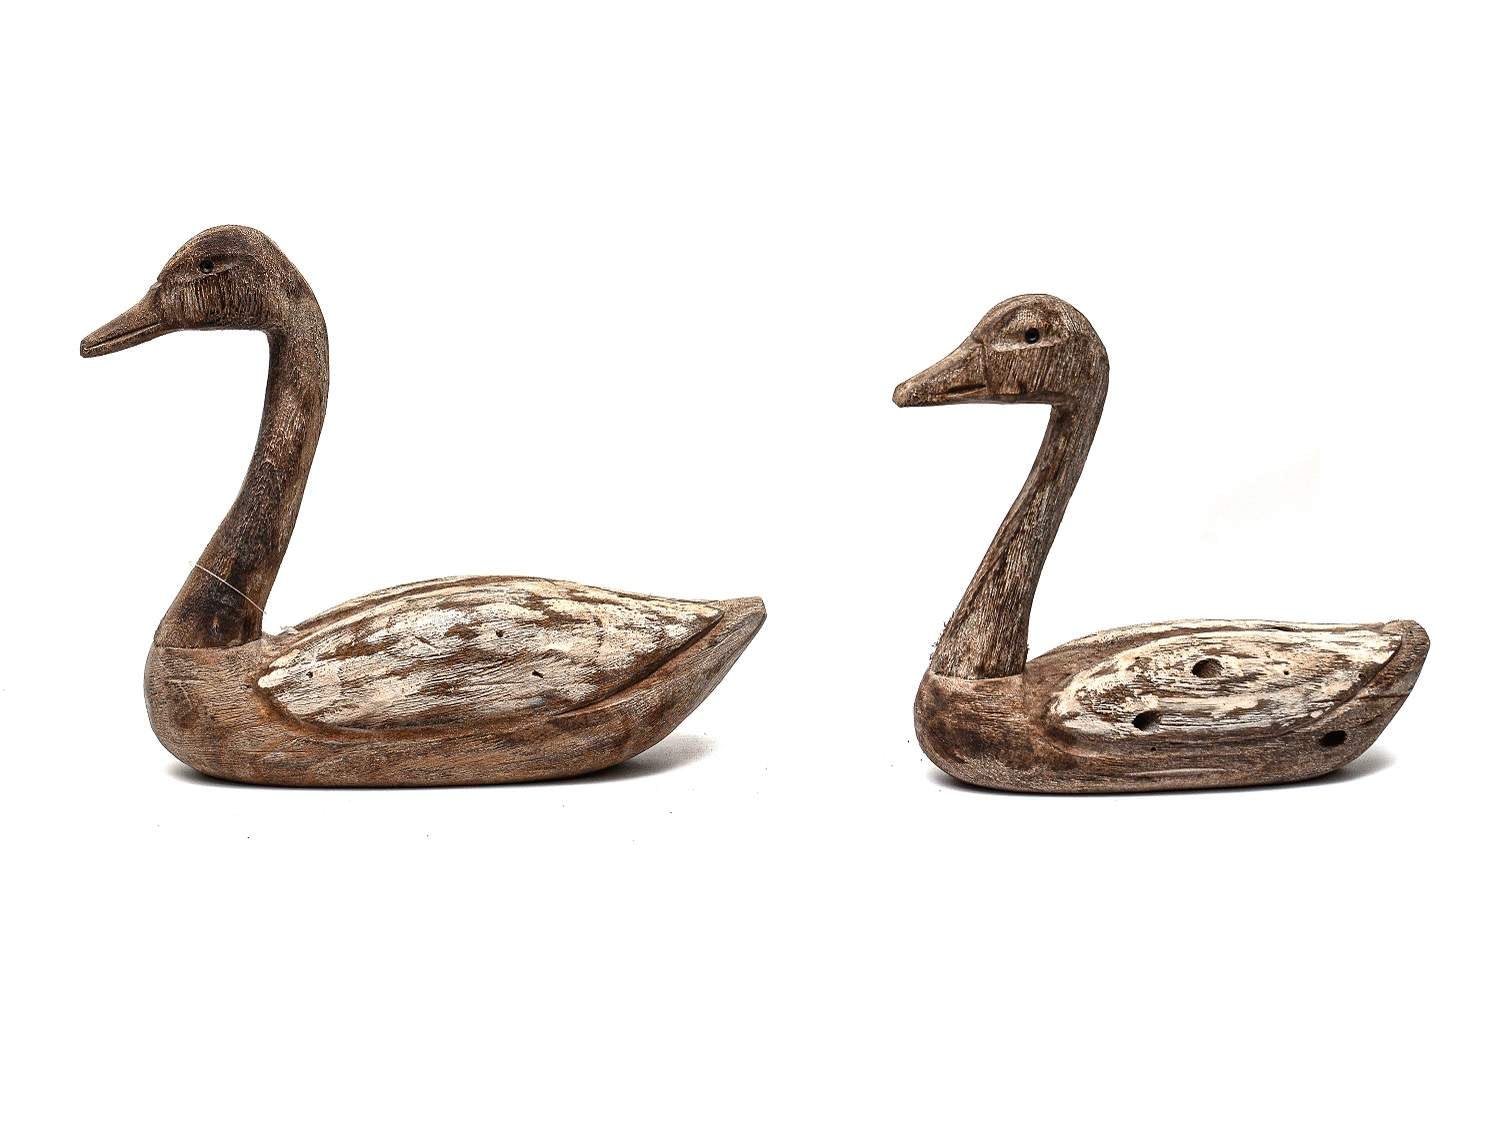 Wooden Ducks - Side